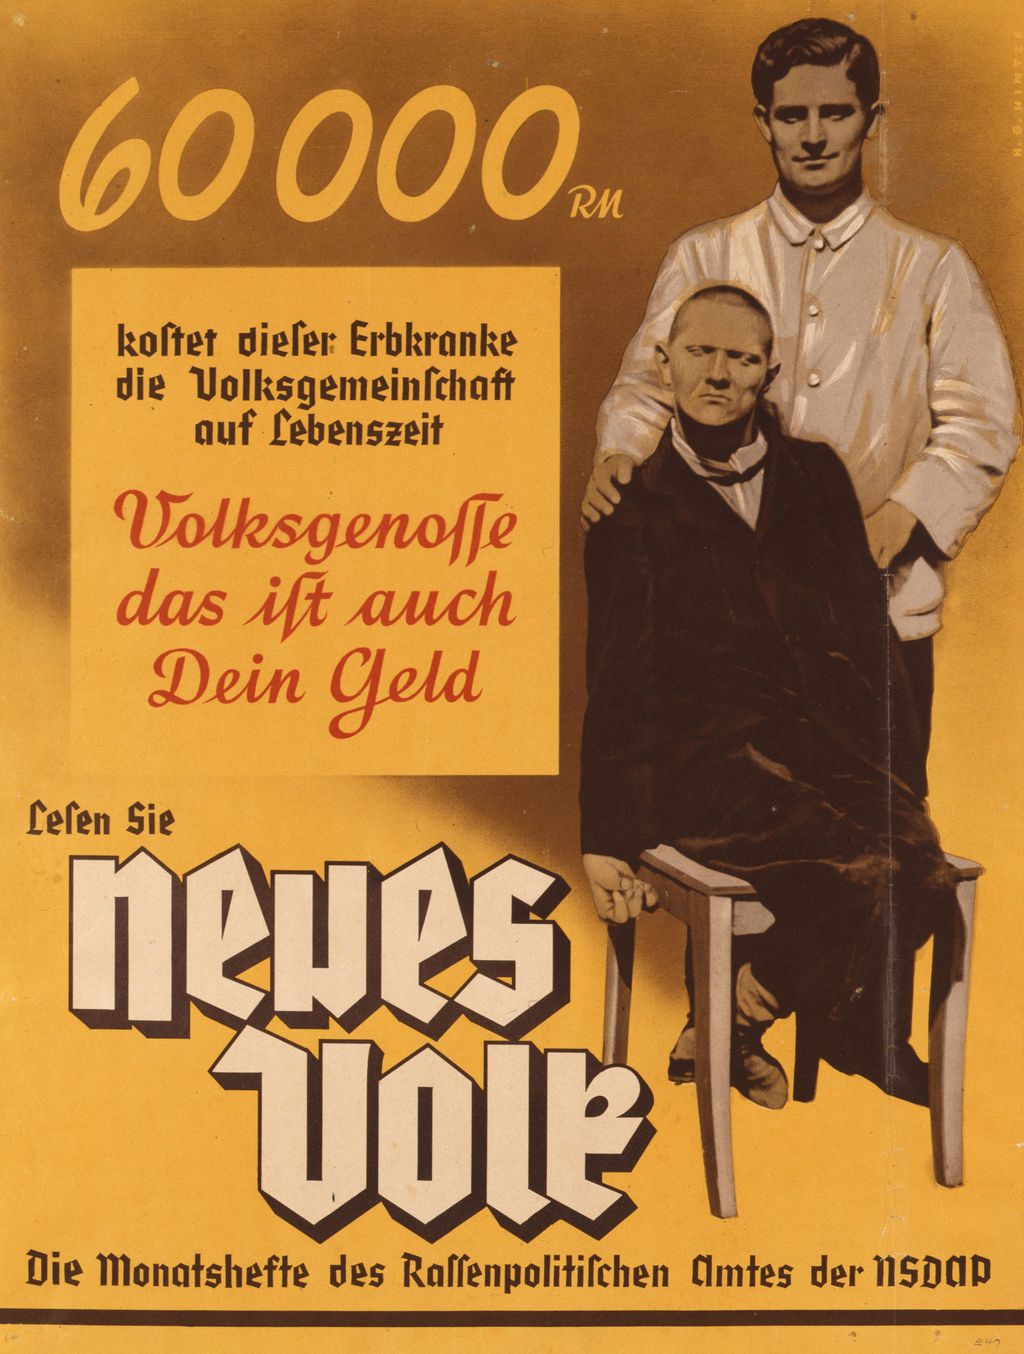 Plakat für die Monatshefte "Neues Volk" des Rassenpolitischen Amtes der NSDAP für die Propagierung von Eugenik und Euthanasie, um 1937/1938